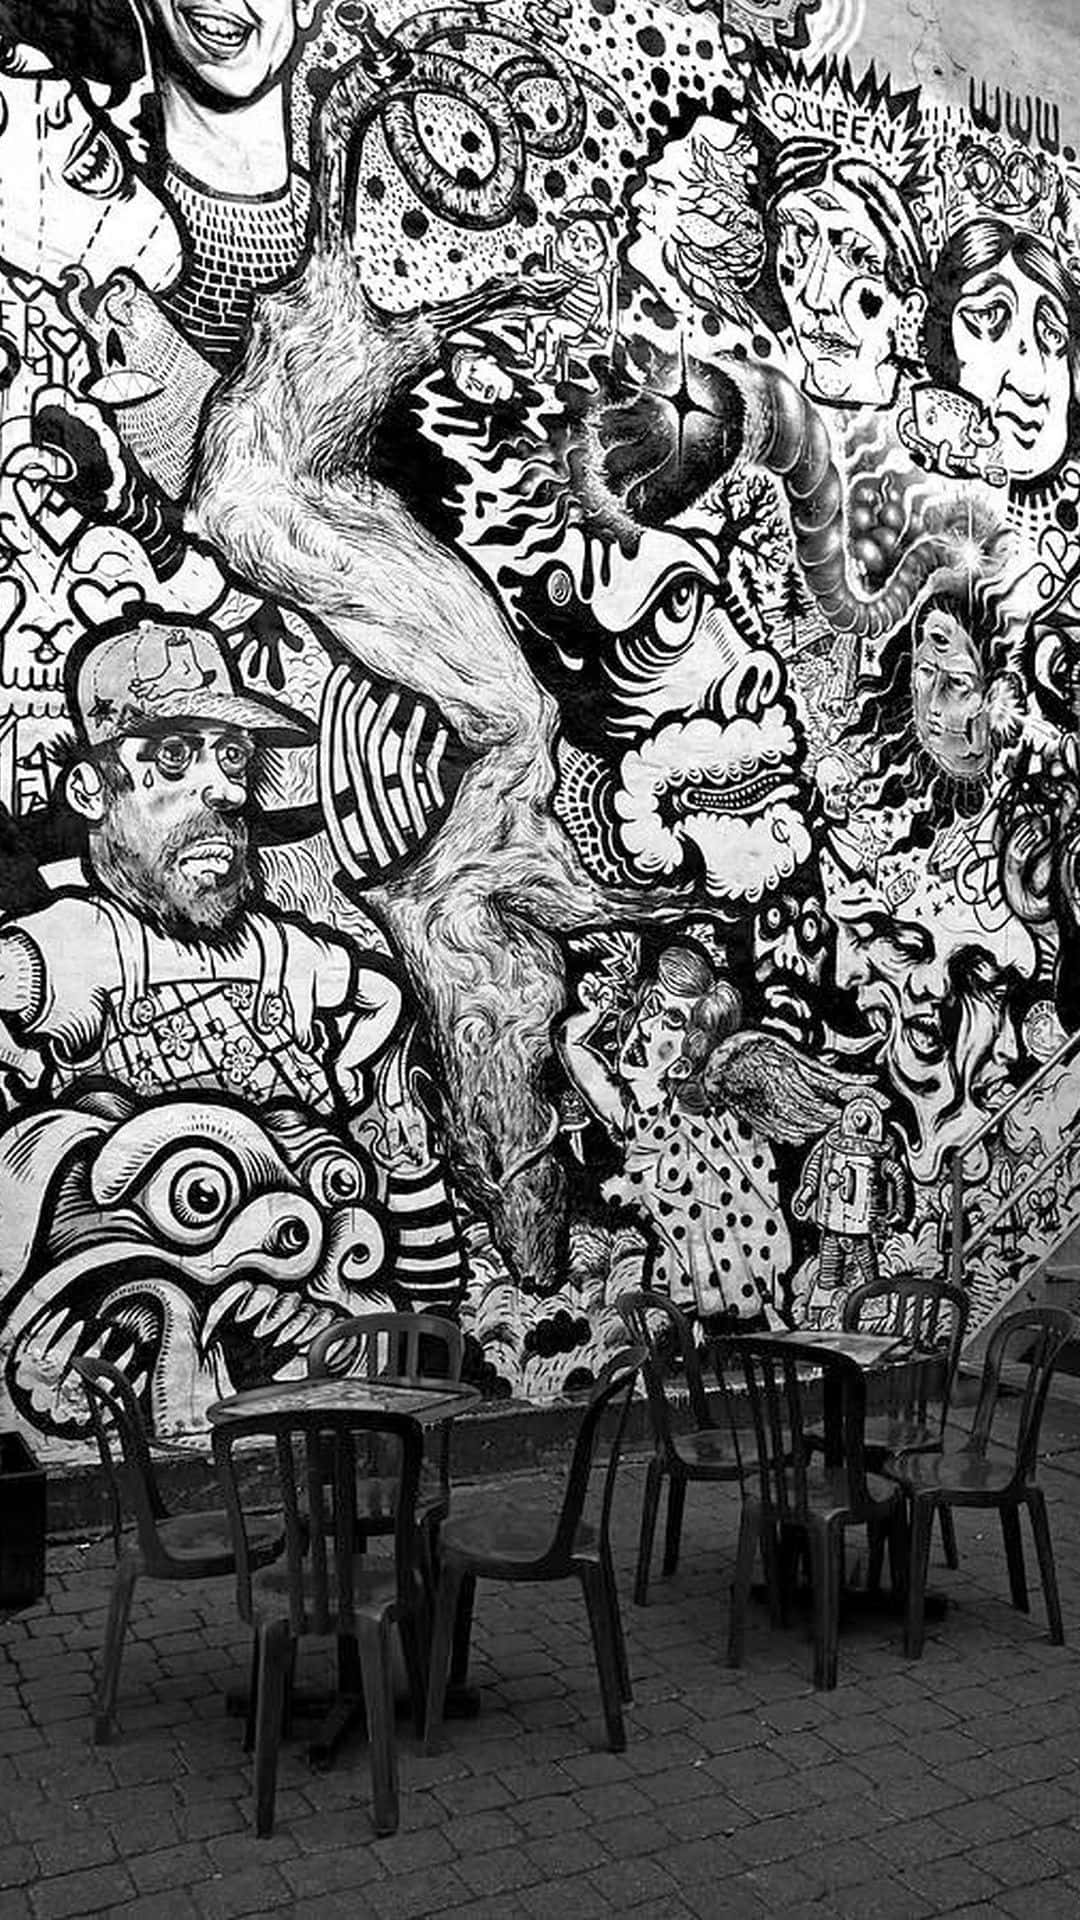 Urban artistic expression in black and white graffiti Wallpaper